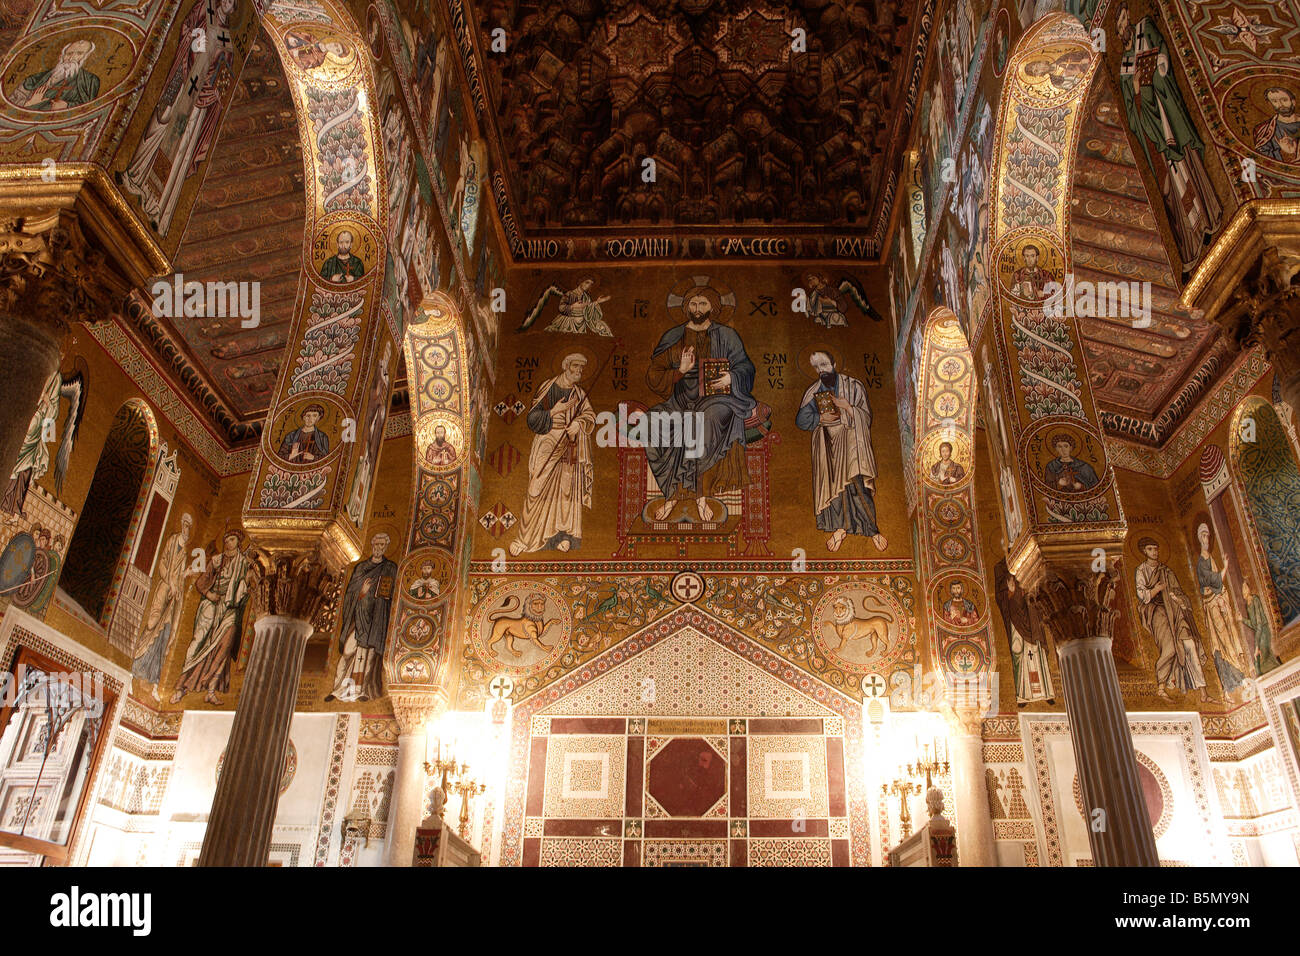 Capella Palatina innen mit Mosaiken und Holzdecke, Palermo, Sizilien Stockfoto